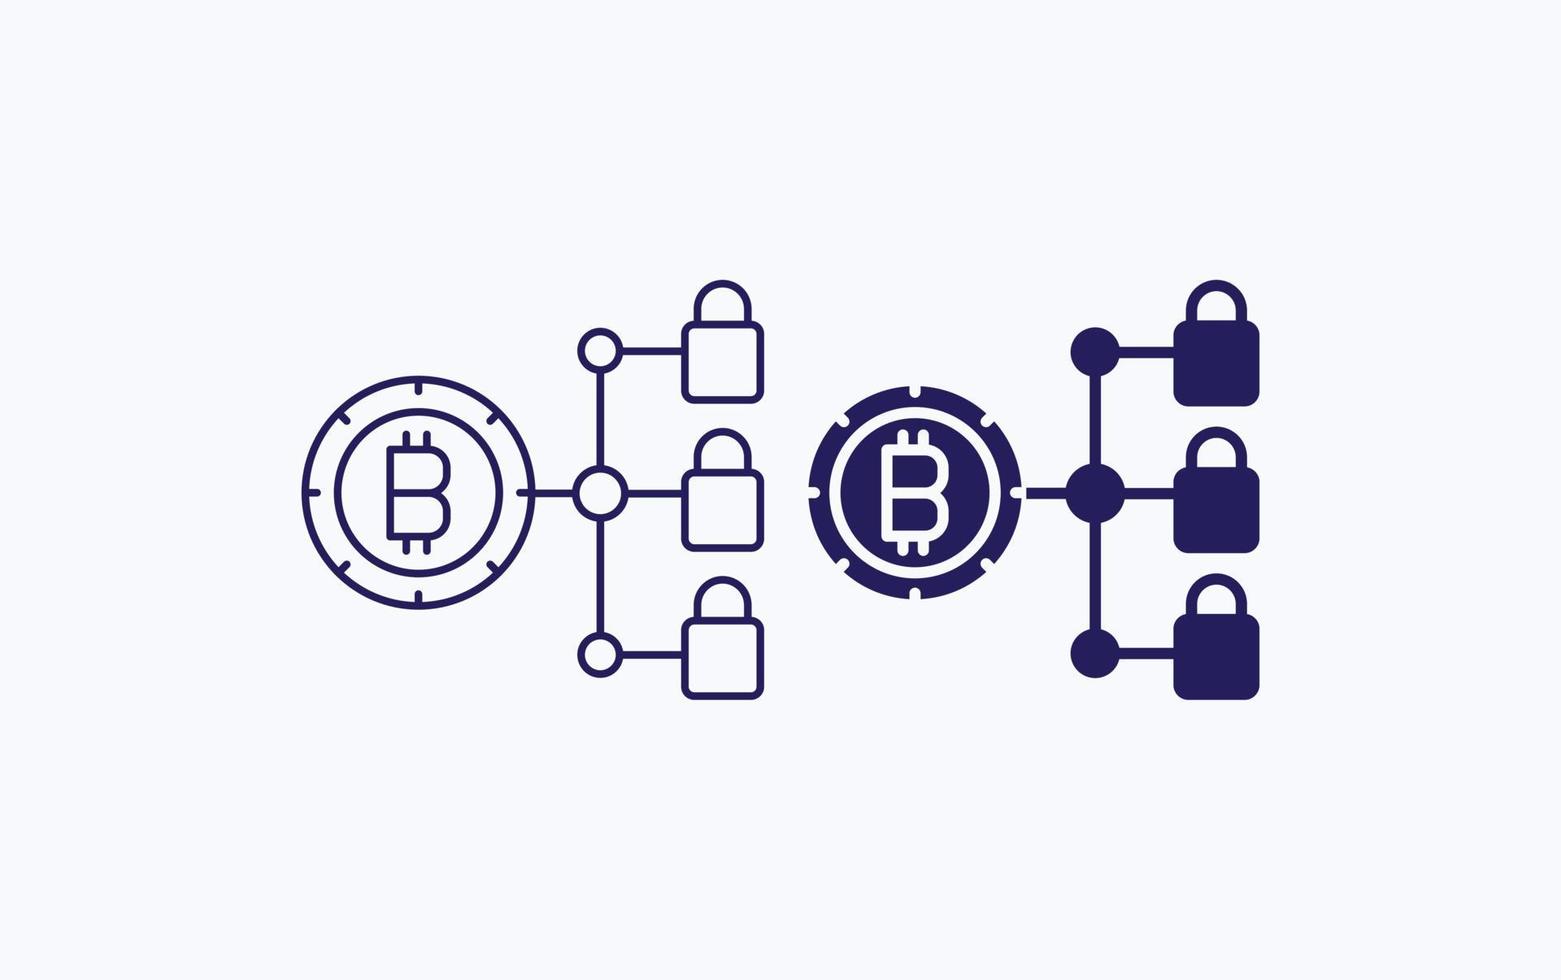 Bitcoin blockchain, safety lock vector illustration icon